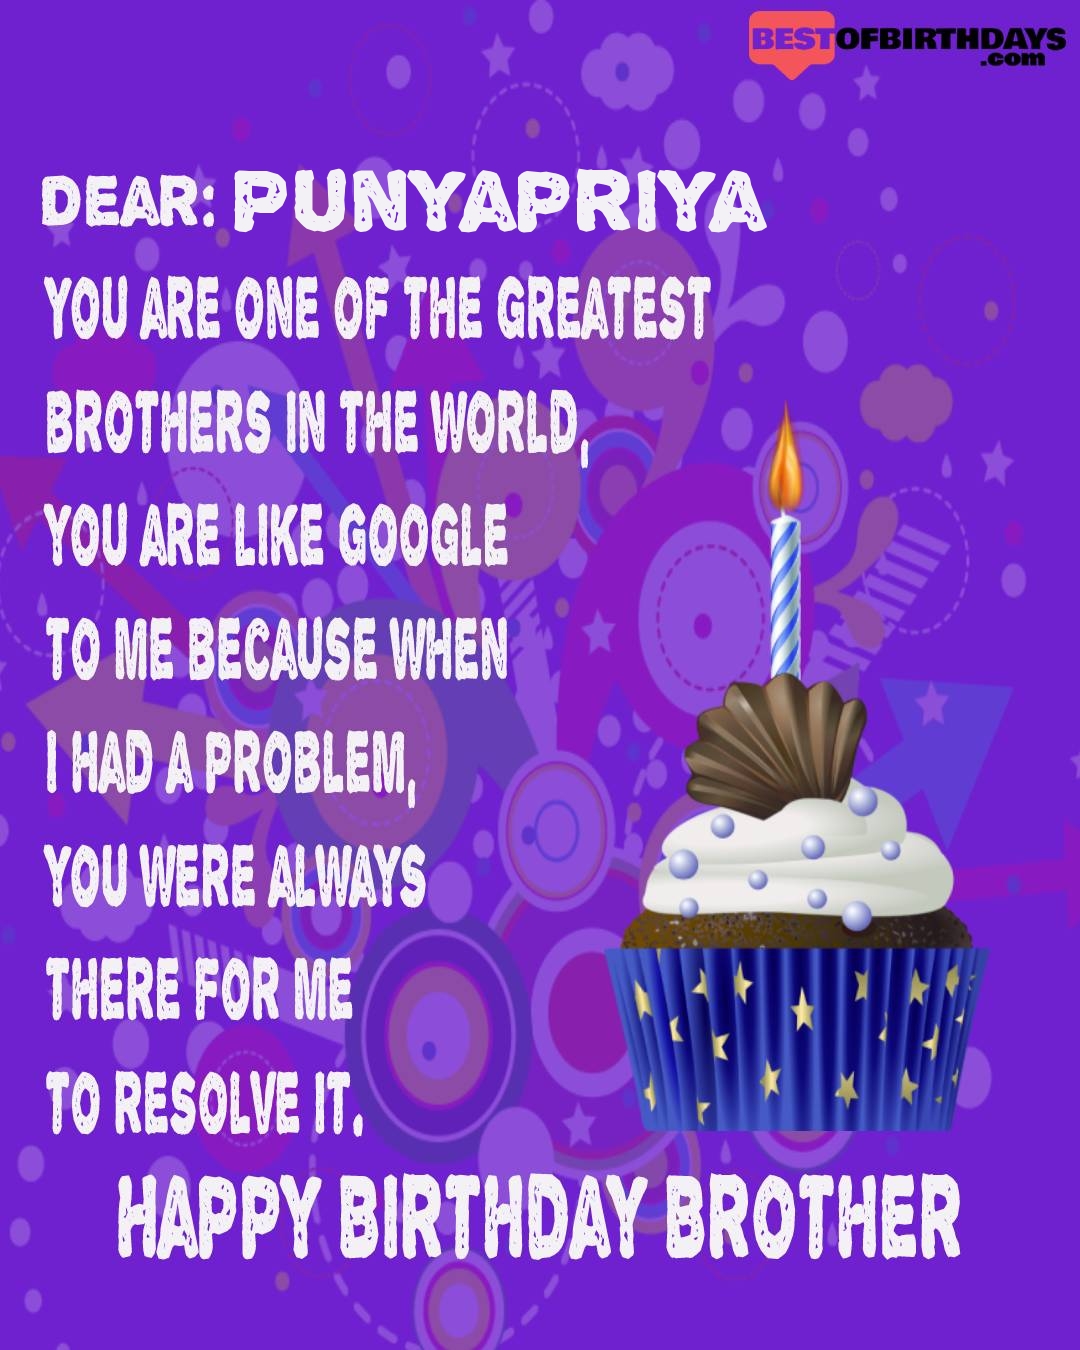 Happy birthday punyapriya bhai brother bro